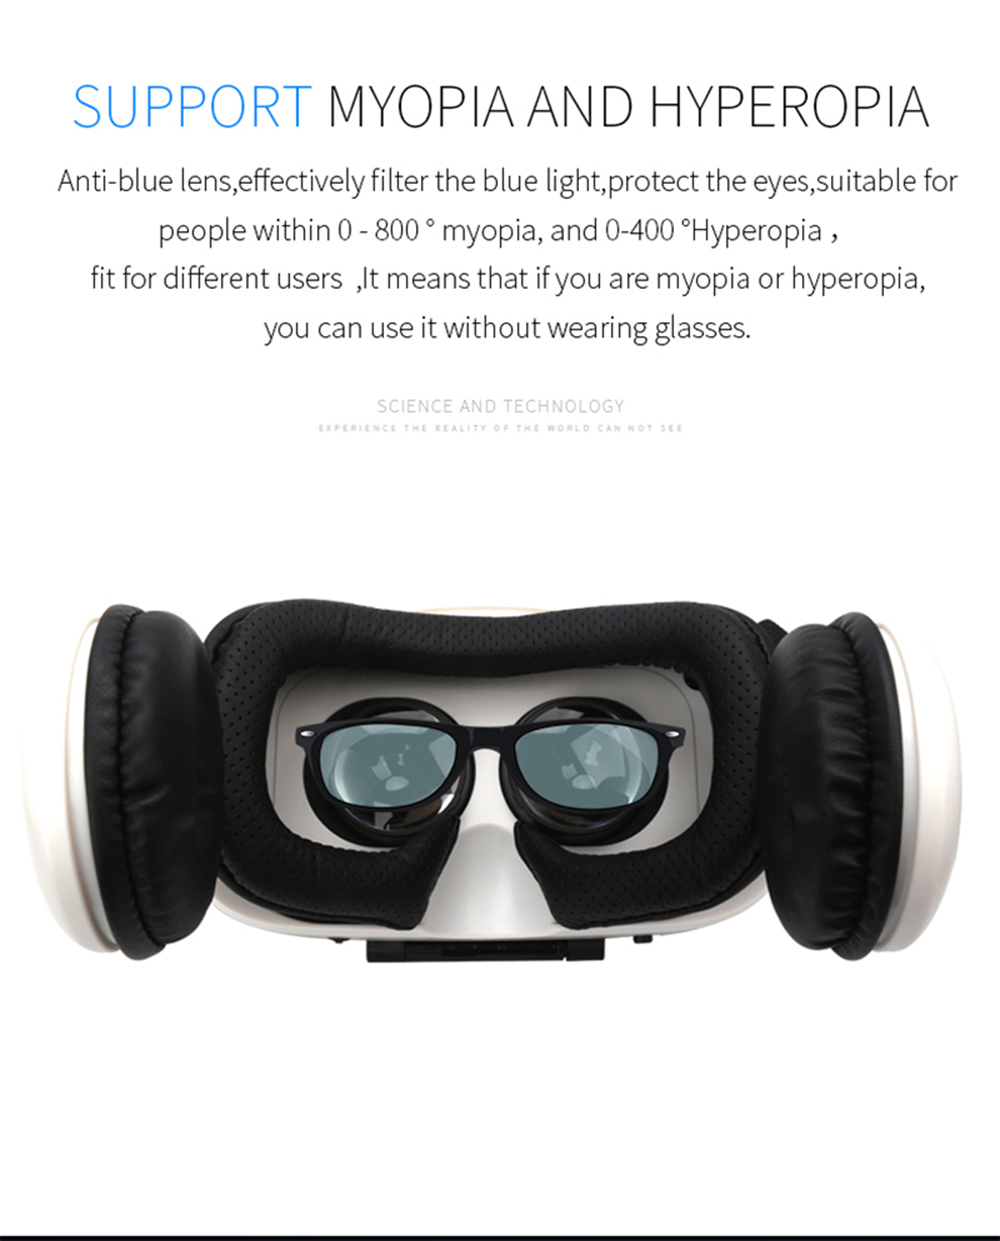 VR PARK 3D VR lunettes grand Angle plein écran réalité virtuelle pour Smartphone Android IOS lunettes Len avec contrôle Bluetooth